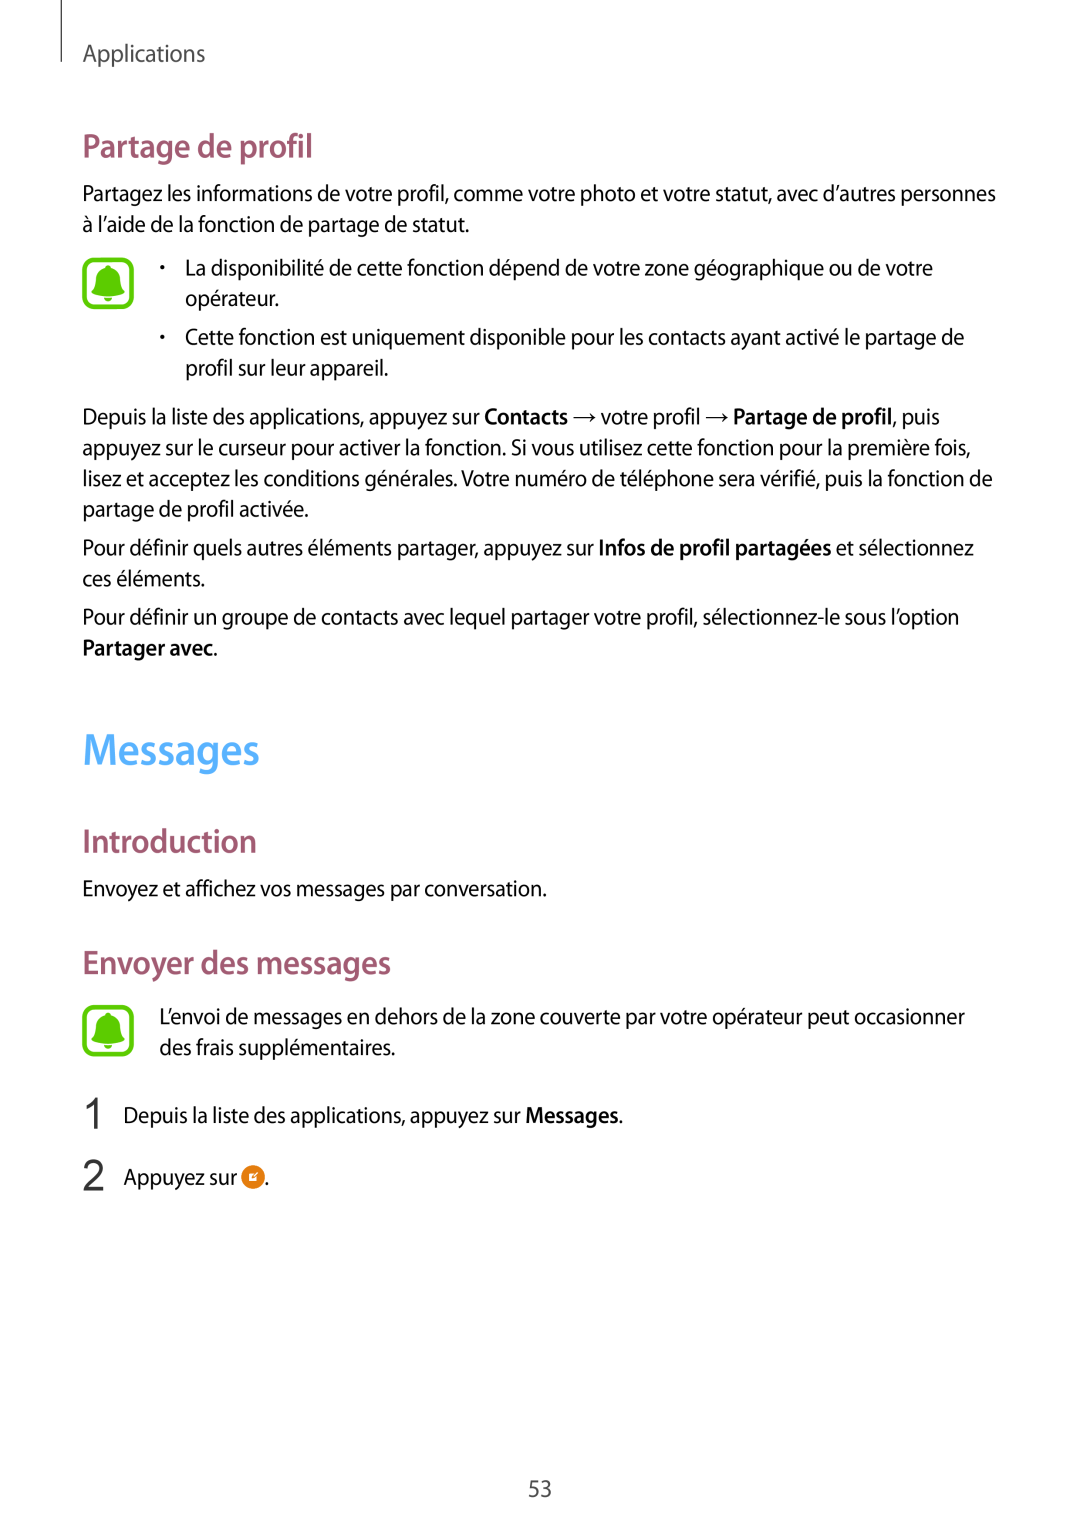 Samsung SM-G920FZKAXEF, SM-G920FZWAXEF manual Messages, Partage de profil, Envoyer des messages, Introduction, Applications 